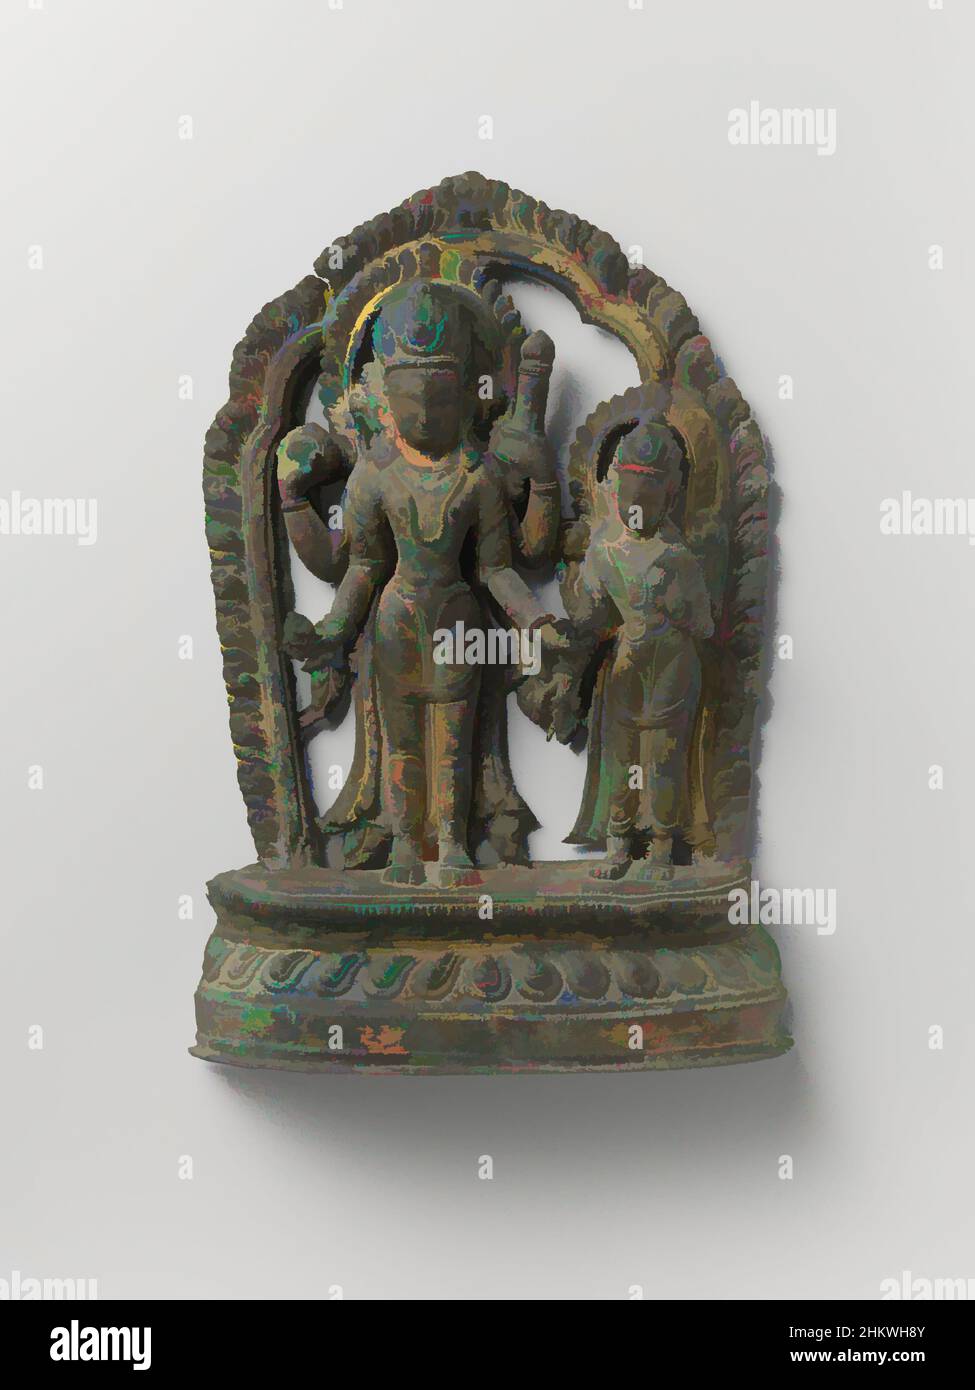 Art inspiré par image du couple de dieu Vishnu et Shri, image du couple de dieu Vishnu et Shri. Entourés d'un halo, les deux divinités se trouvent sur une base de lotus. Vishnu a quatre bras avec un disque de projection et une coquille de conch dans ses mains droites et un club et lotus dans sa gauche. La déesse a, oeuvres classiques modernisées par Artotop avec un peu de modernité. Formes, couleur et valeur, impact visuel accrocheur sur l'art émotions par la liberté d'œuvres d'art d'une manière contemporaine. Un message intemporel qui cherche une nouvelle direction créative. Artistes qui se tournent vers le support numérique et créent le NFT Artotop Banque D'Images